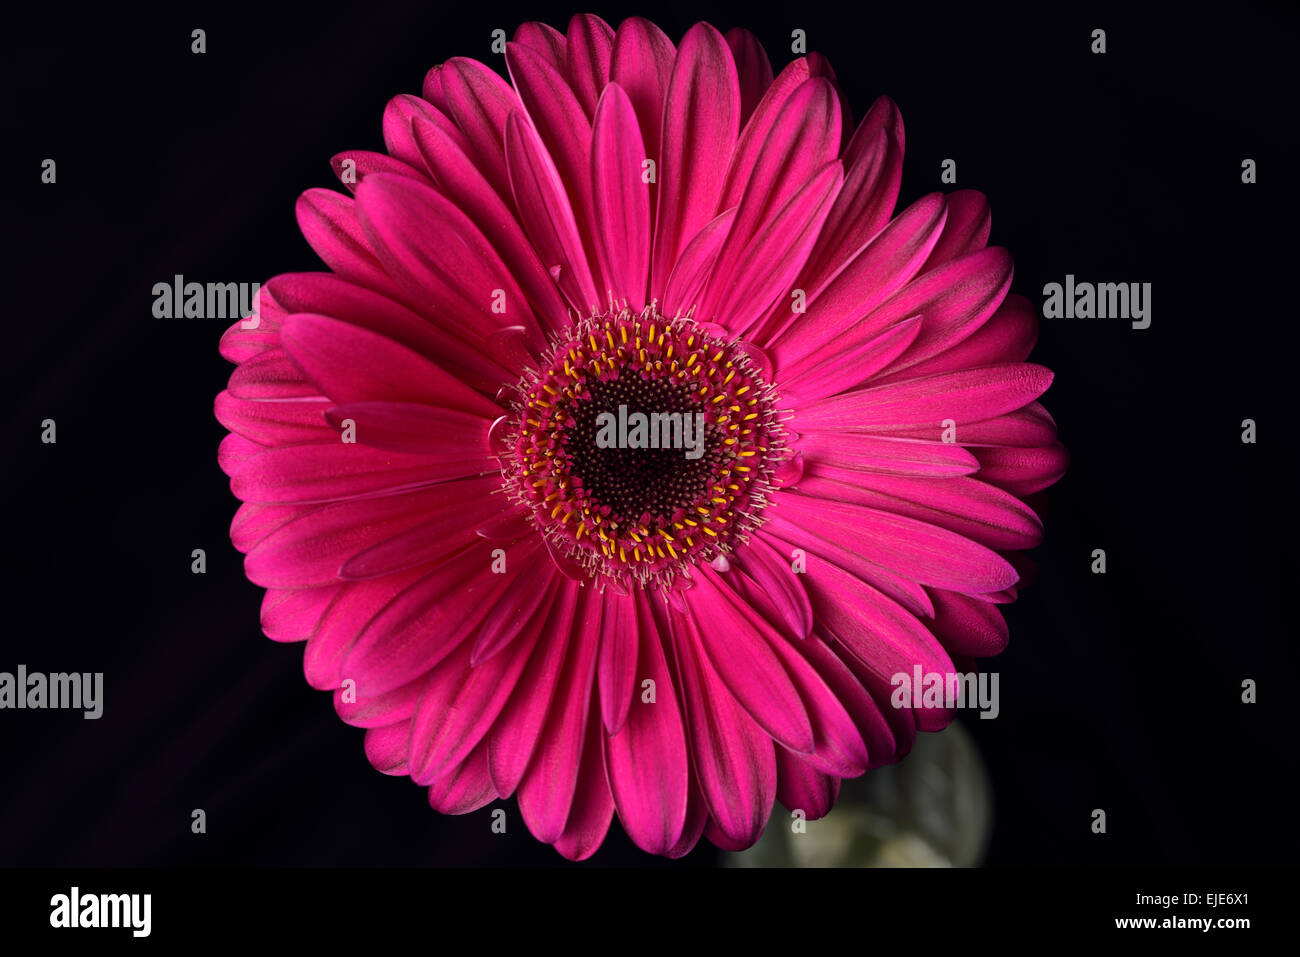 Pink Gerbera daisy flor con un fondo oscuro Foto de stock